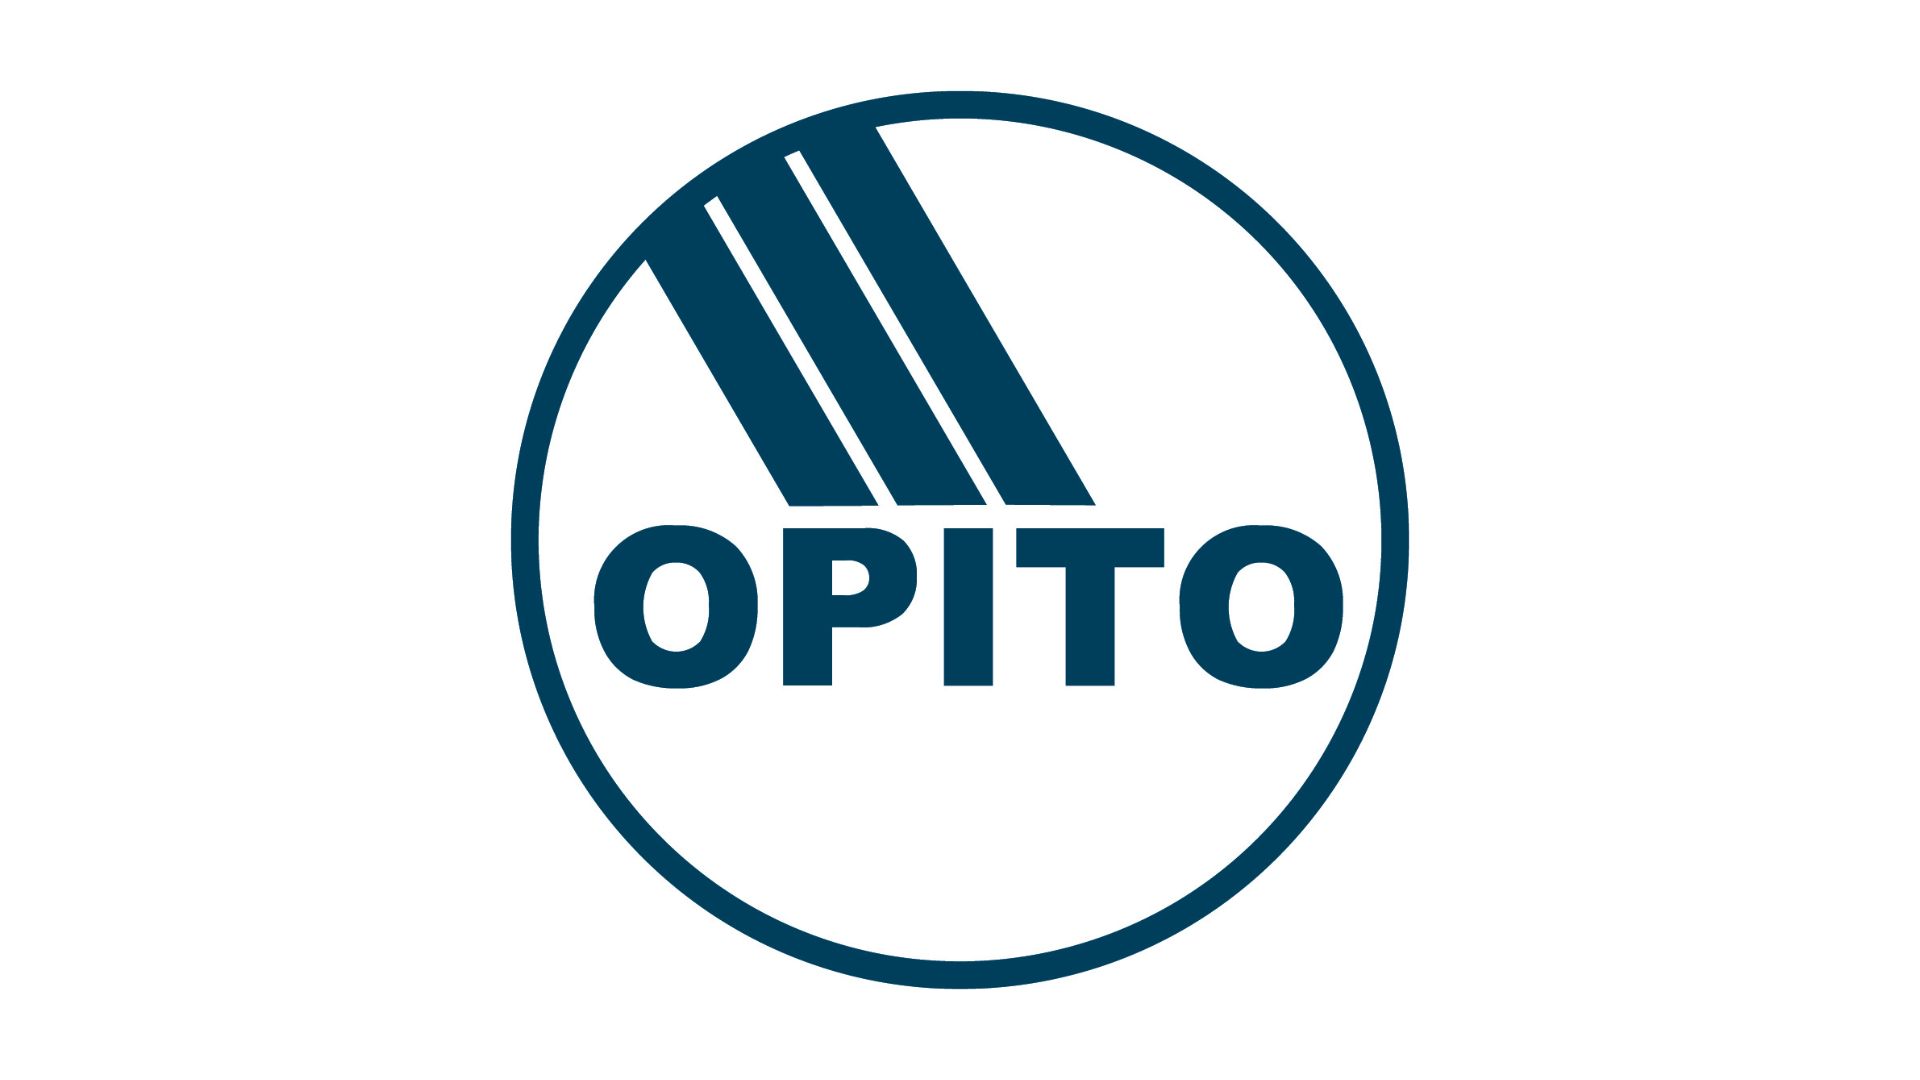 OPITO logo